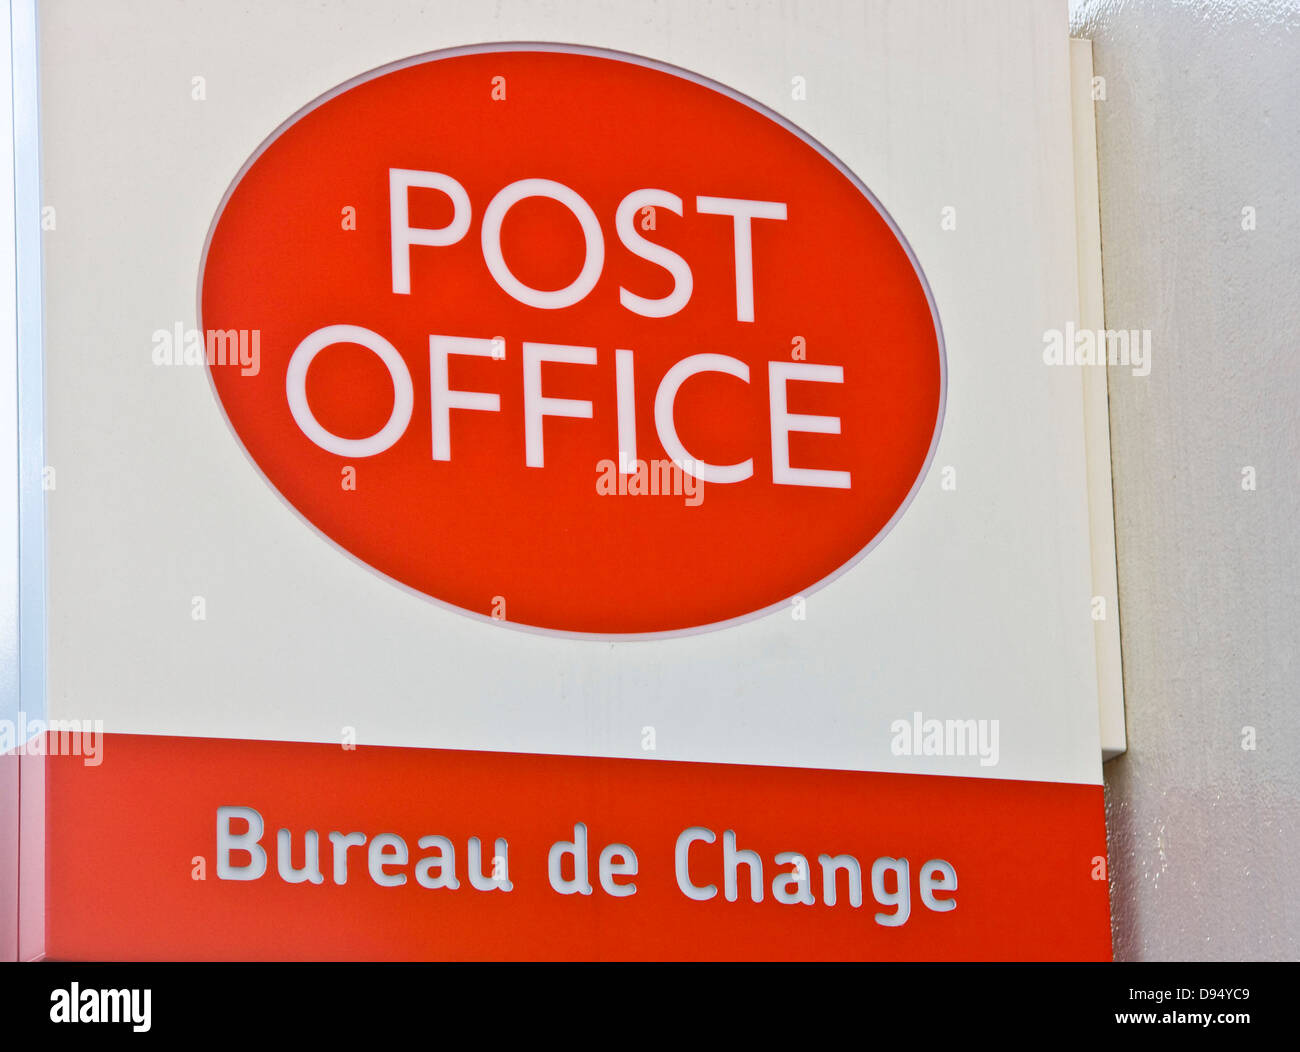 Post office Bureau de Change sign Stock Photo